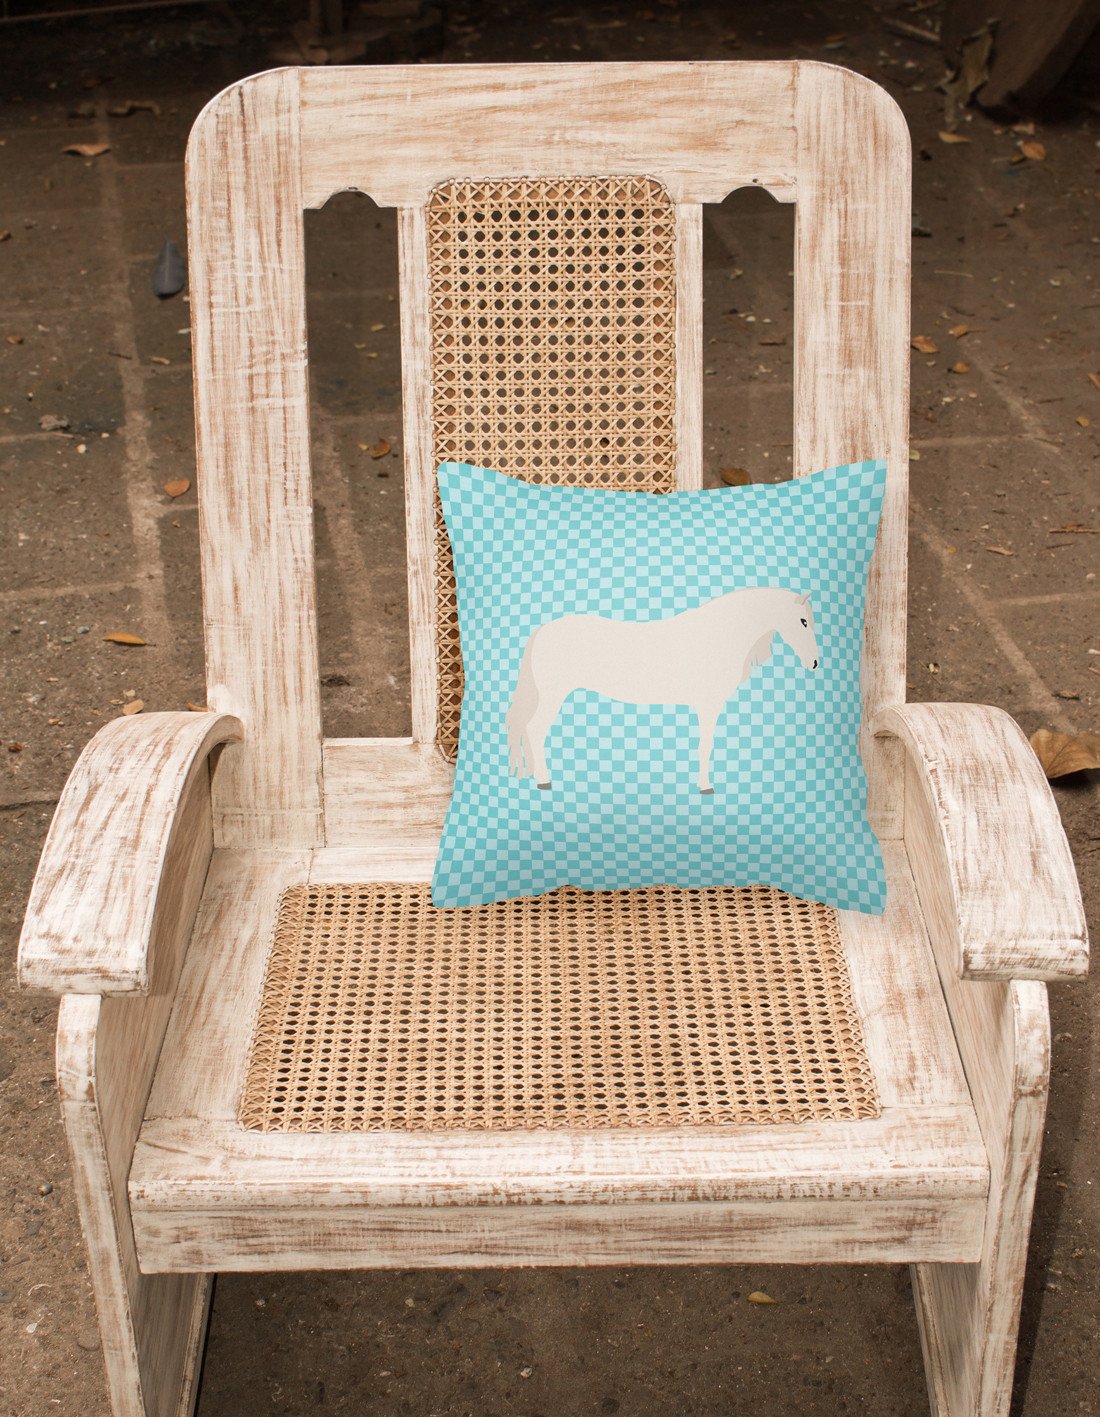 Paso Fino Horse Blue Check Fabric Decorative Pillow BB8079PW1818 by Caroline's Treasures